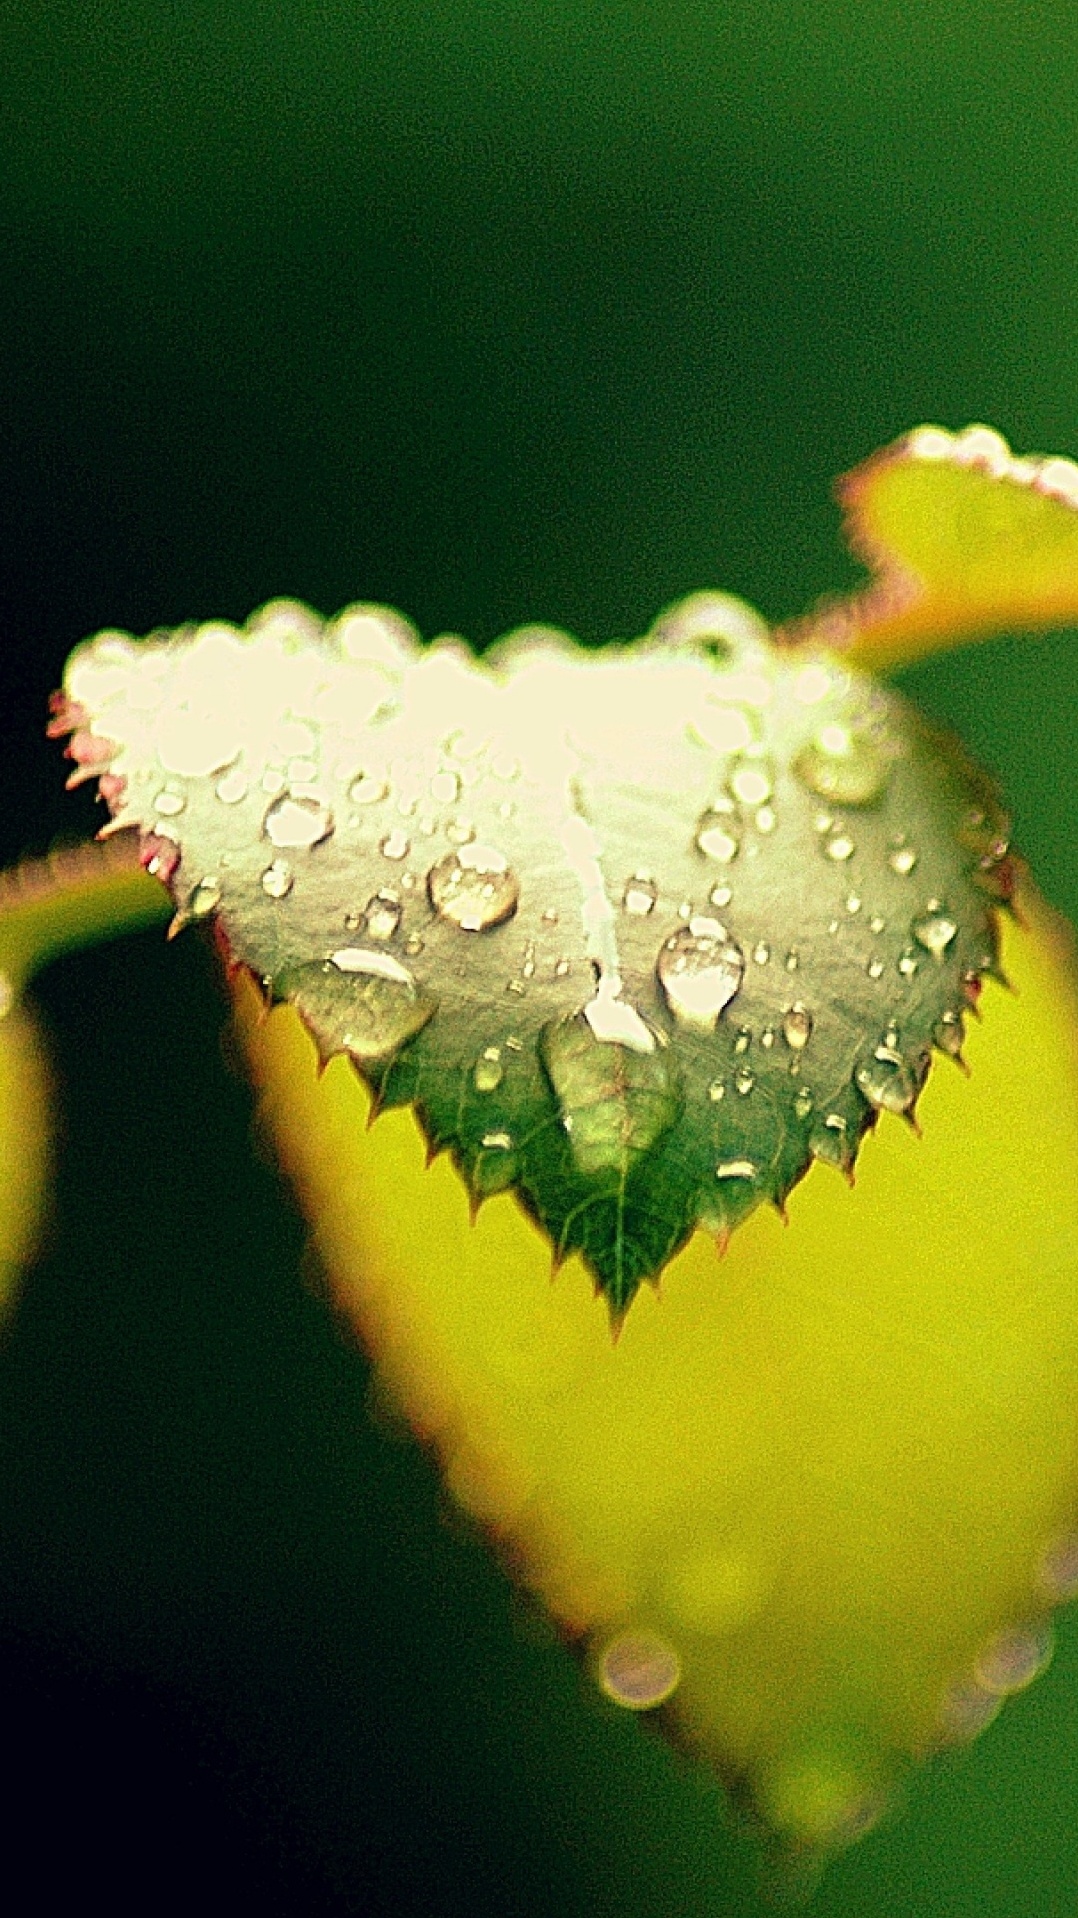 роса, лист, вода, зеленый, влага